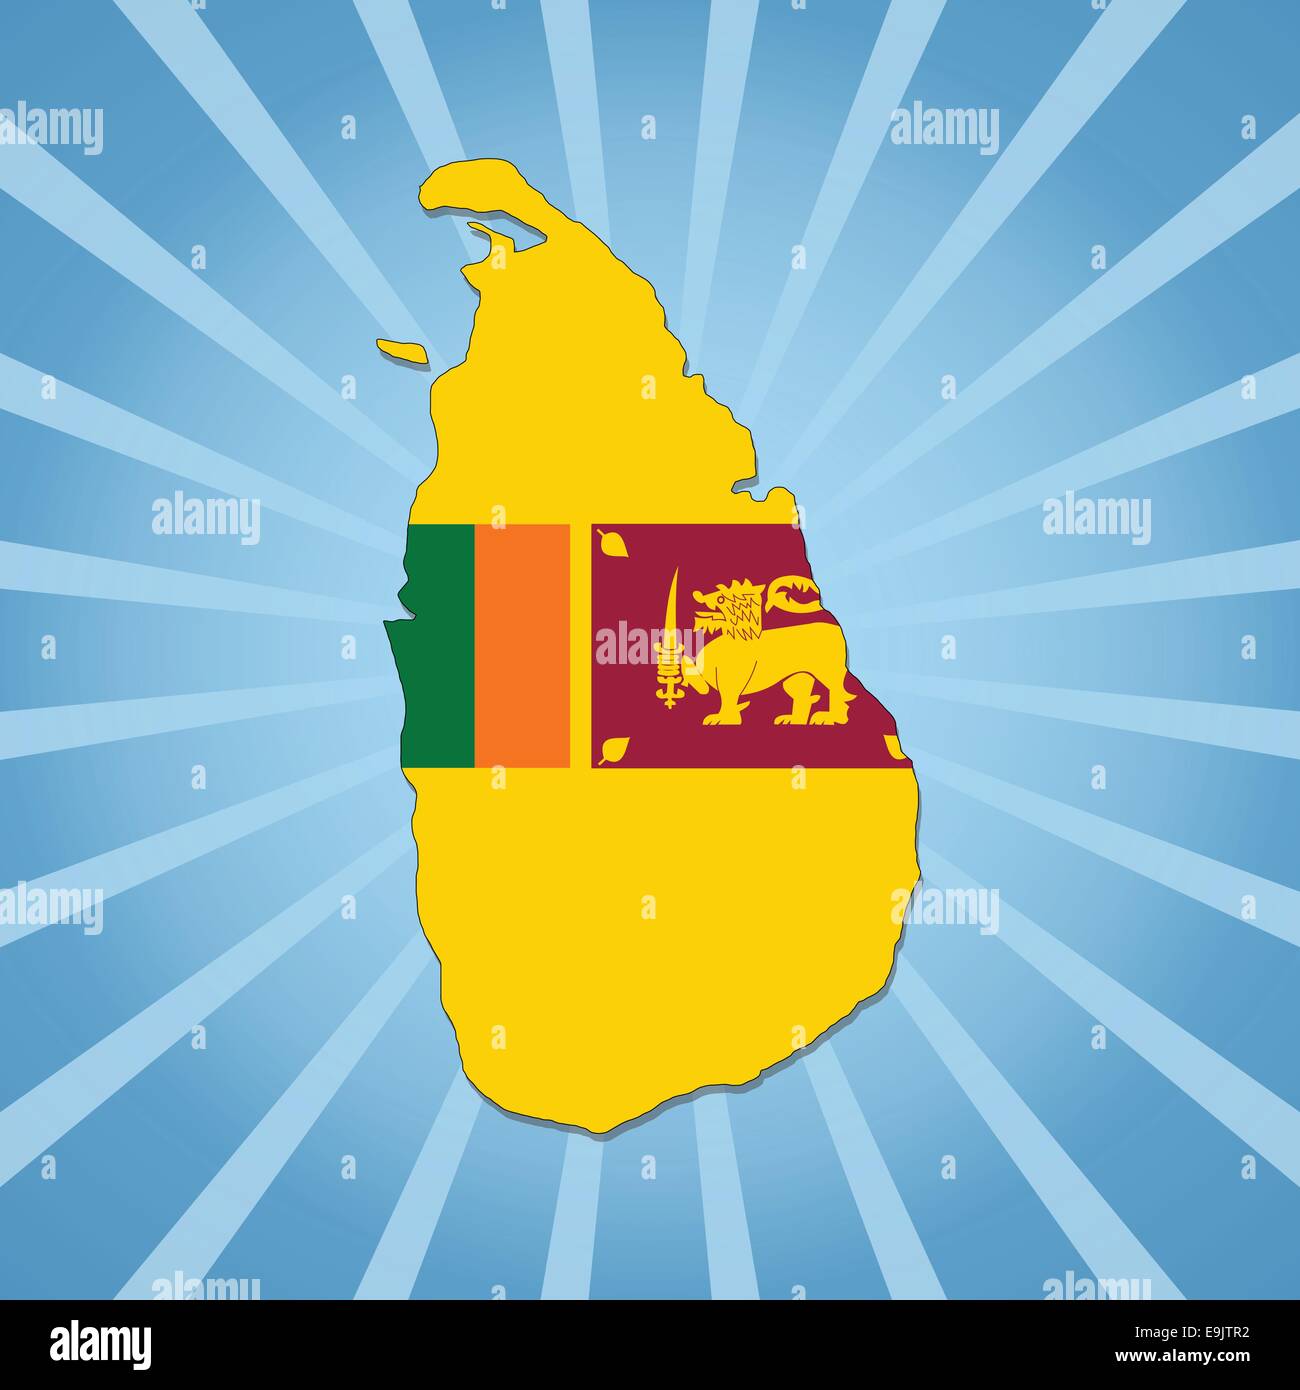 Sri Lanka map flag on blue sunburst illustration Stock Vector